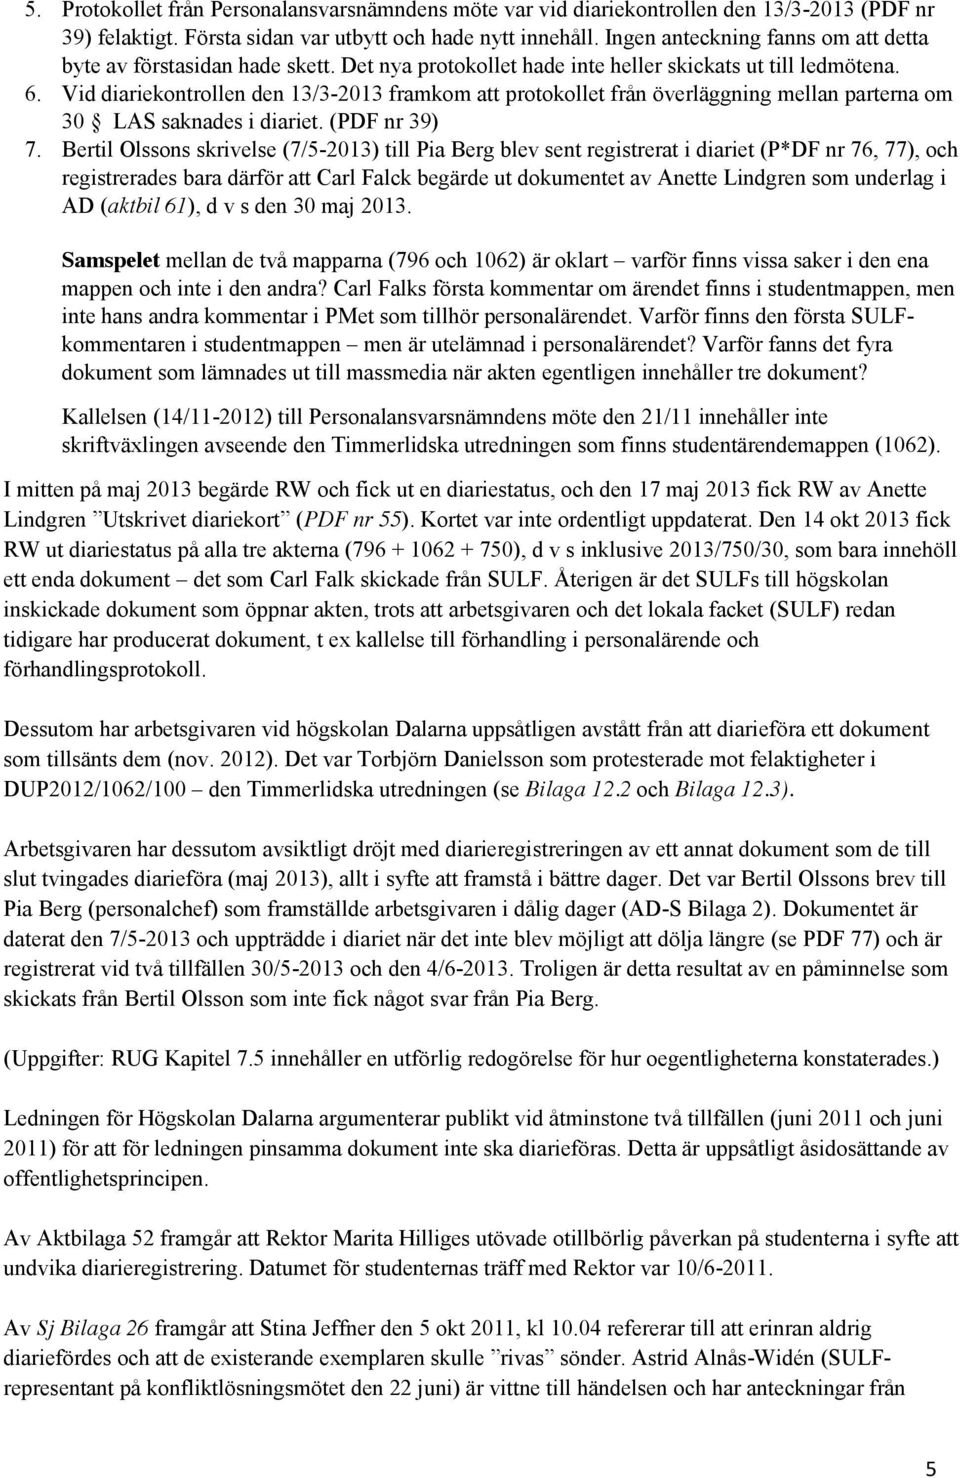 Vid diariekontrollen den 13/3-2013 framkom att protokollet från överläggning mellan parterna om 30 LAS saknades i diariet. (PDF nr 39) 7.